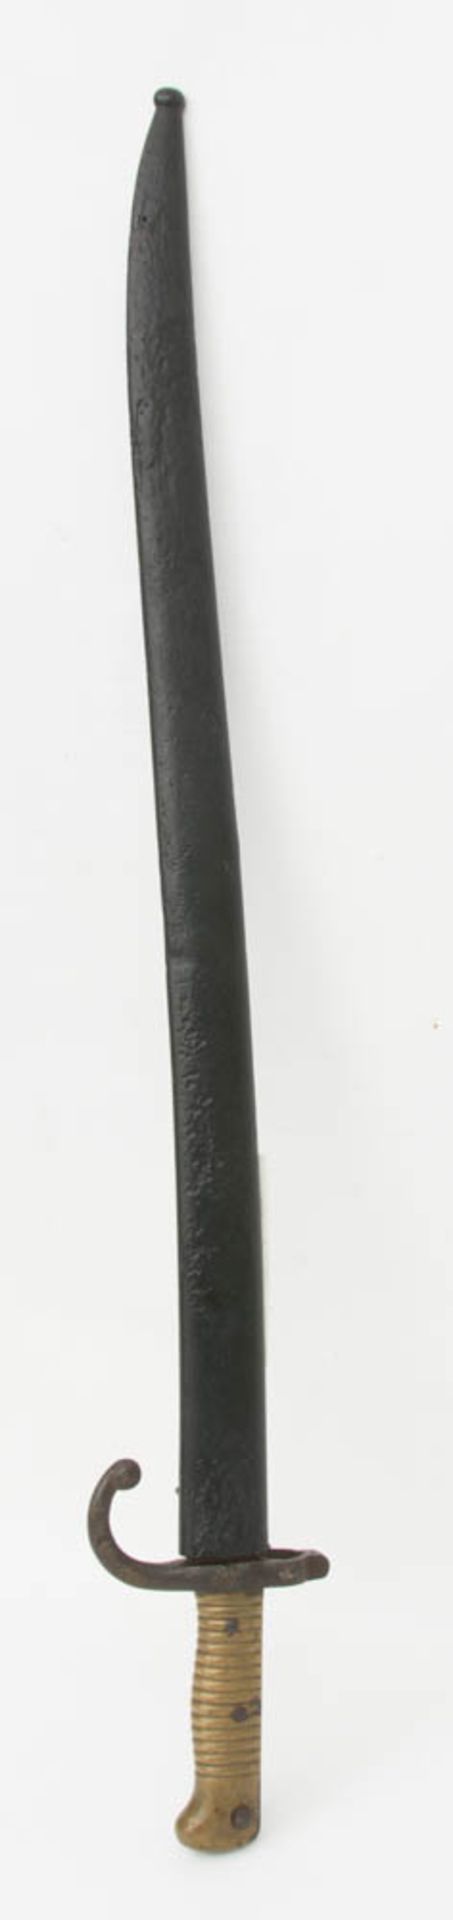 Französisches Jatagan Bajonett, 1869.57 cm lange Klinge mit trogförmiger Kehlung, au - Bild 2 aus 6